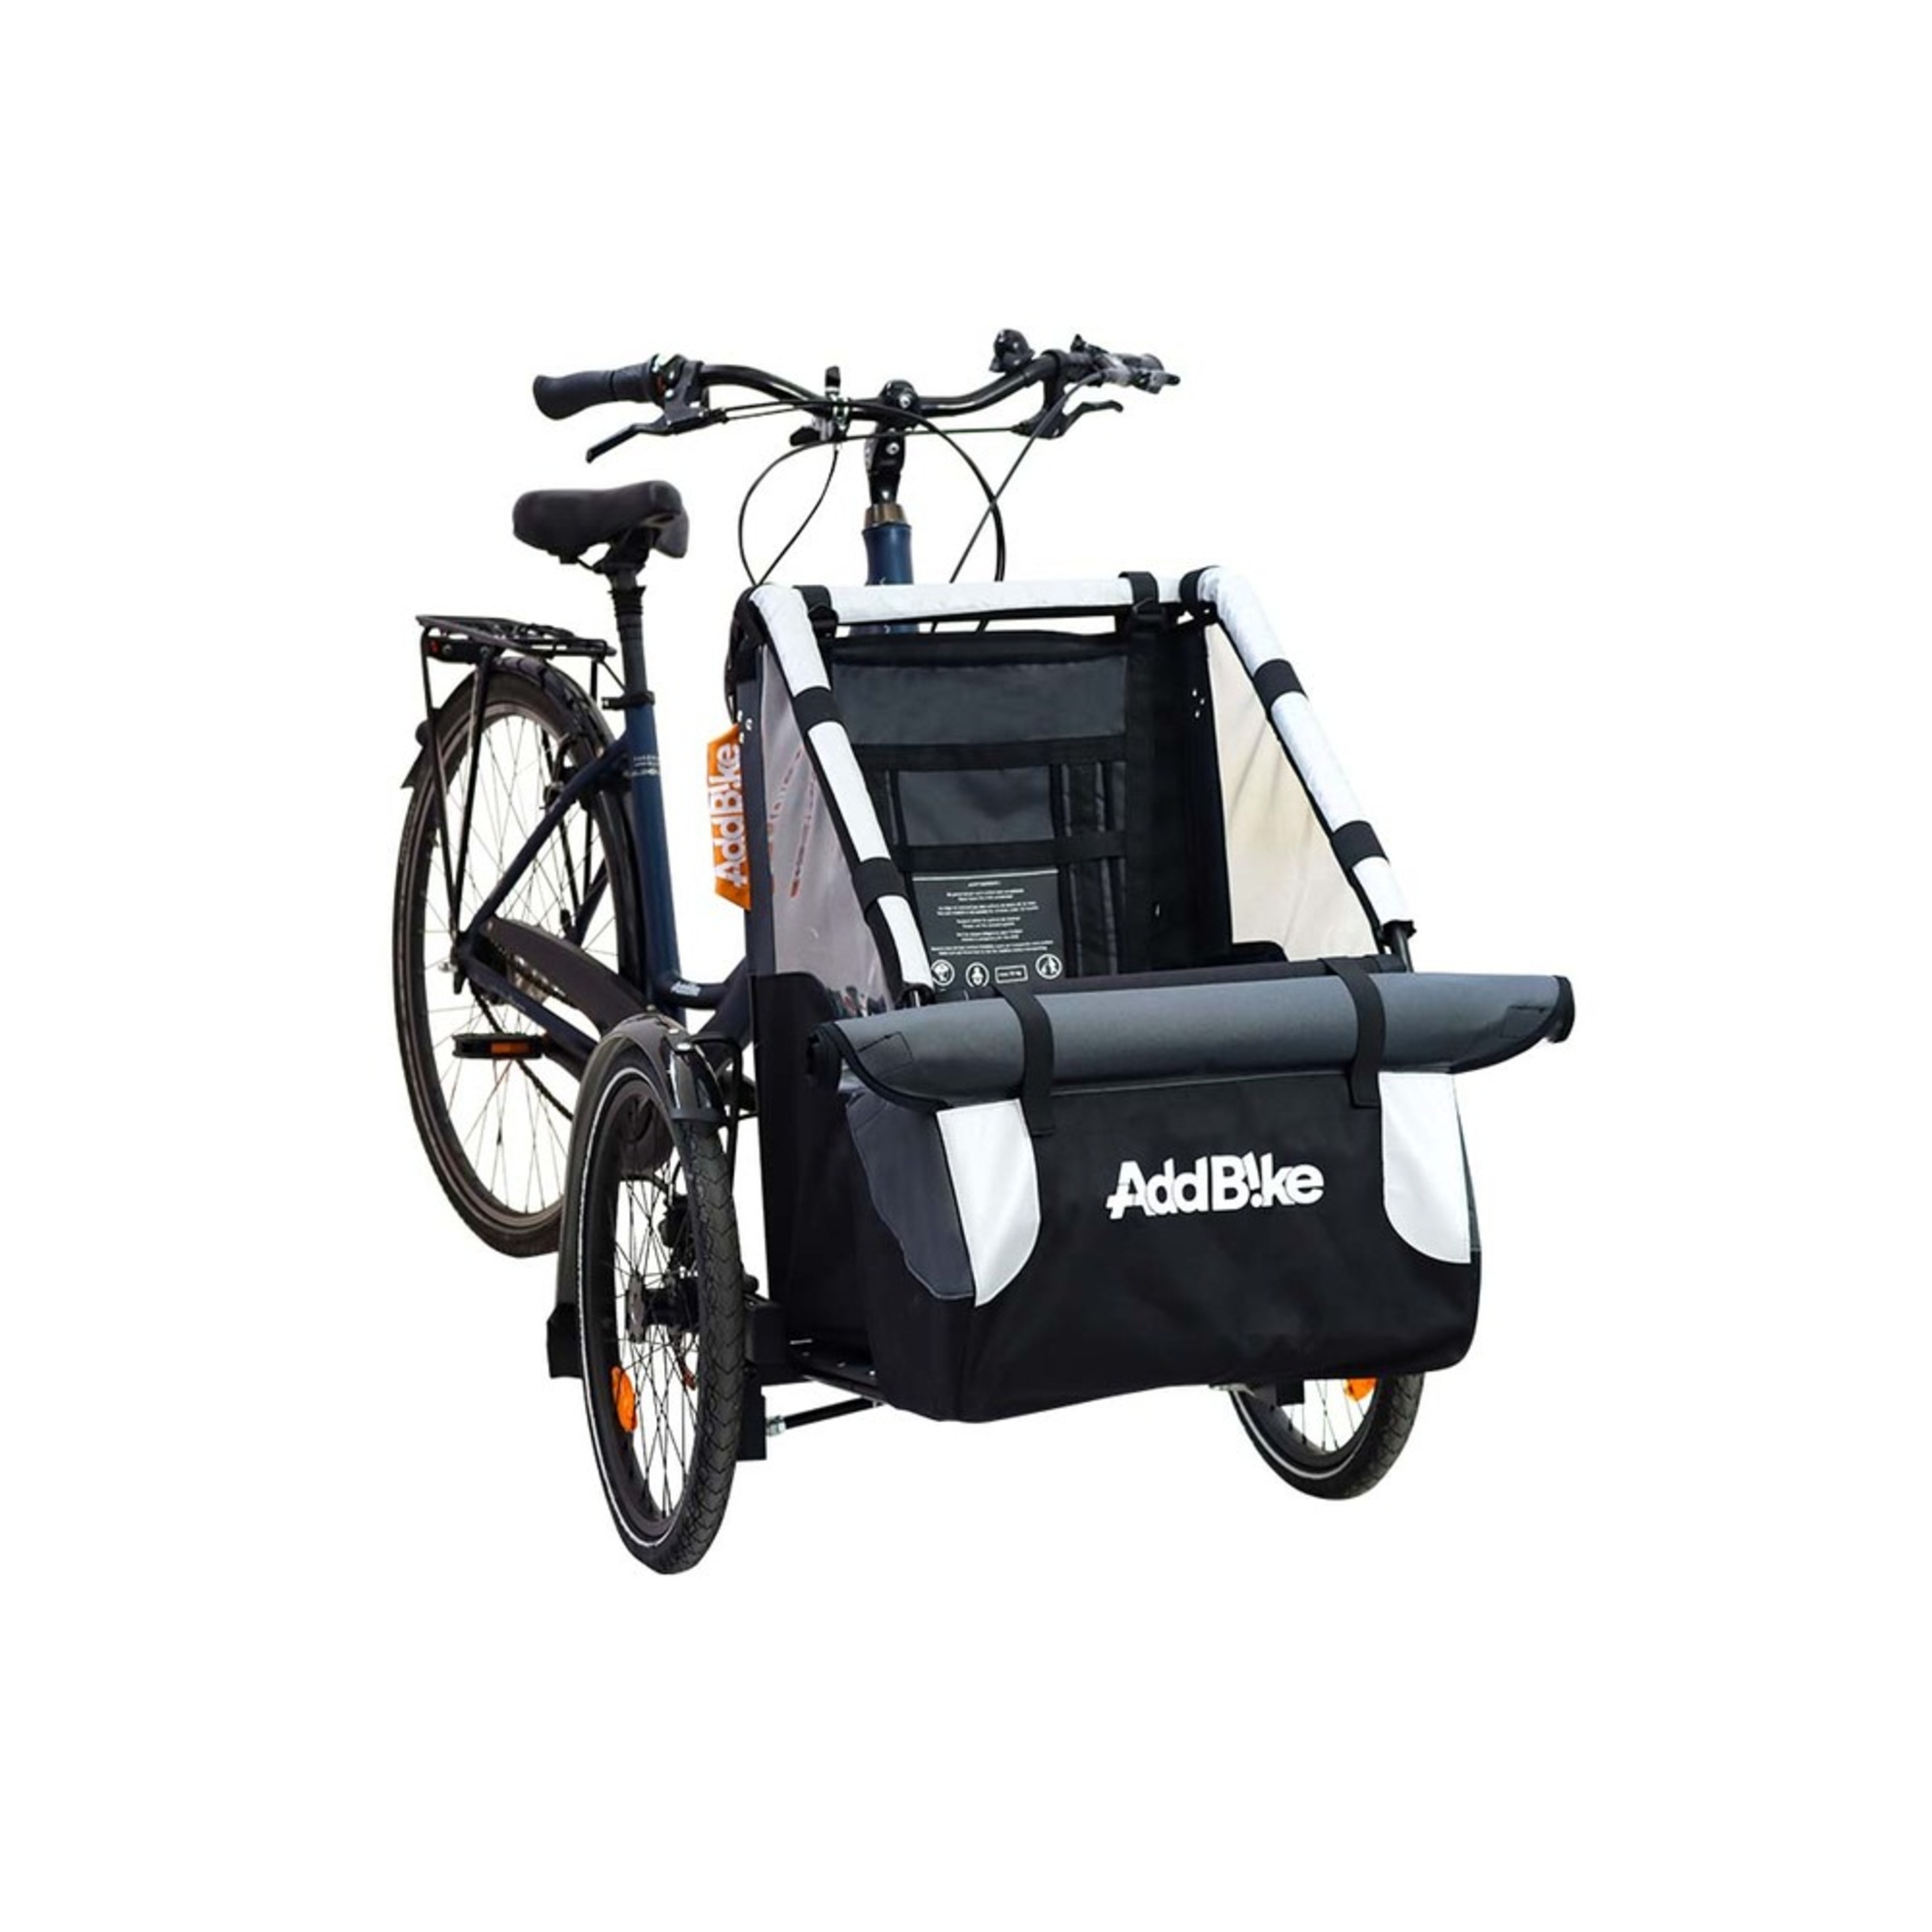 Kit Delantero Addbike Transporte Infantil - Gris/Negro - Kit Delantero: Transporte Infantil  MKP